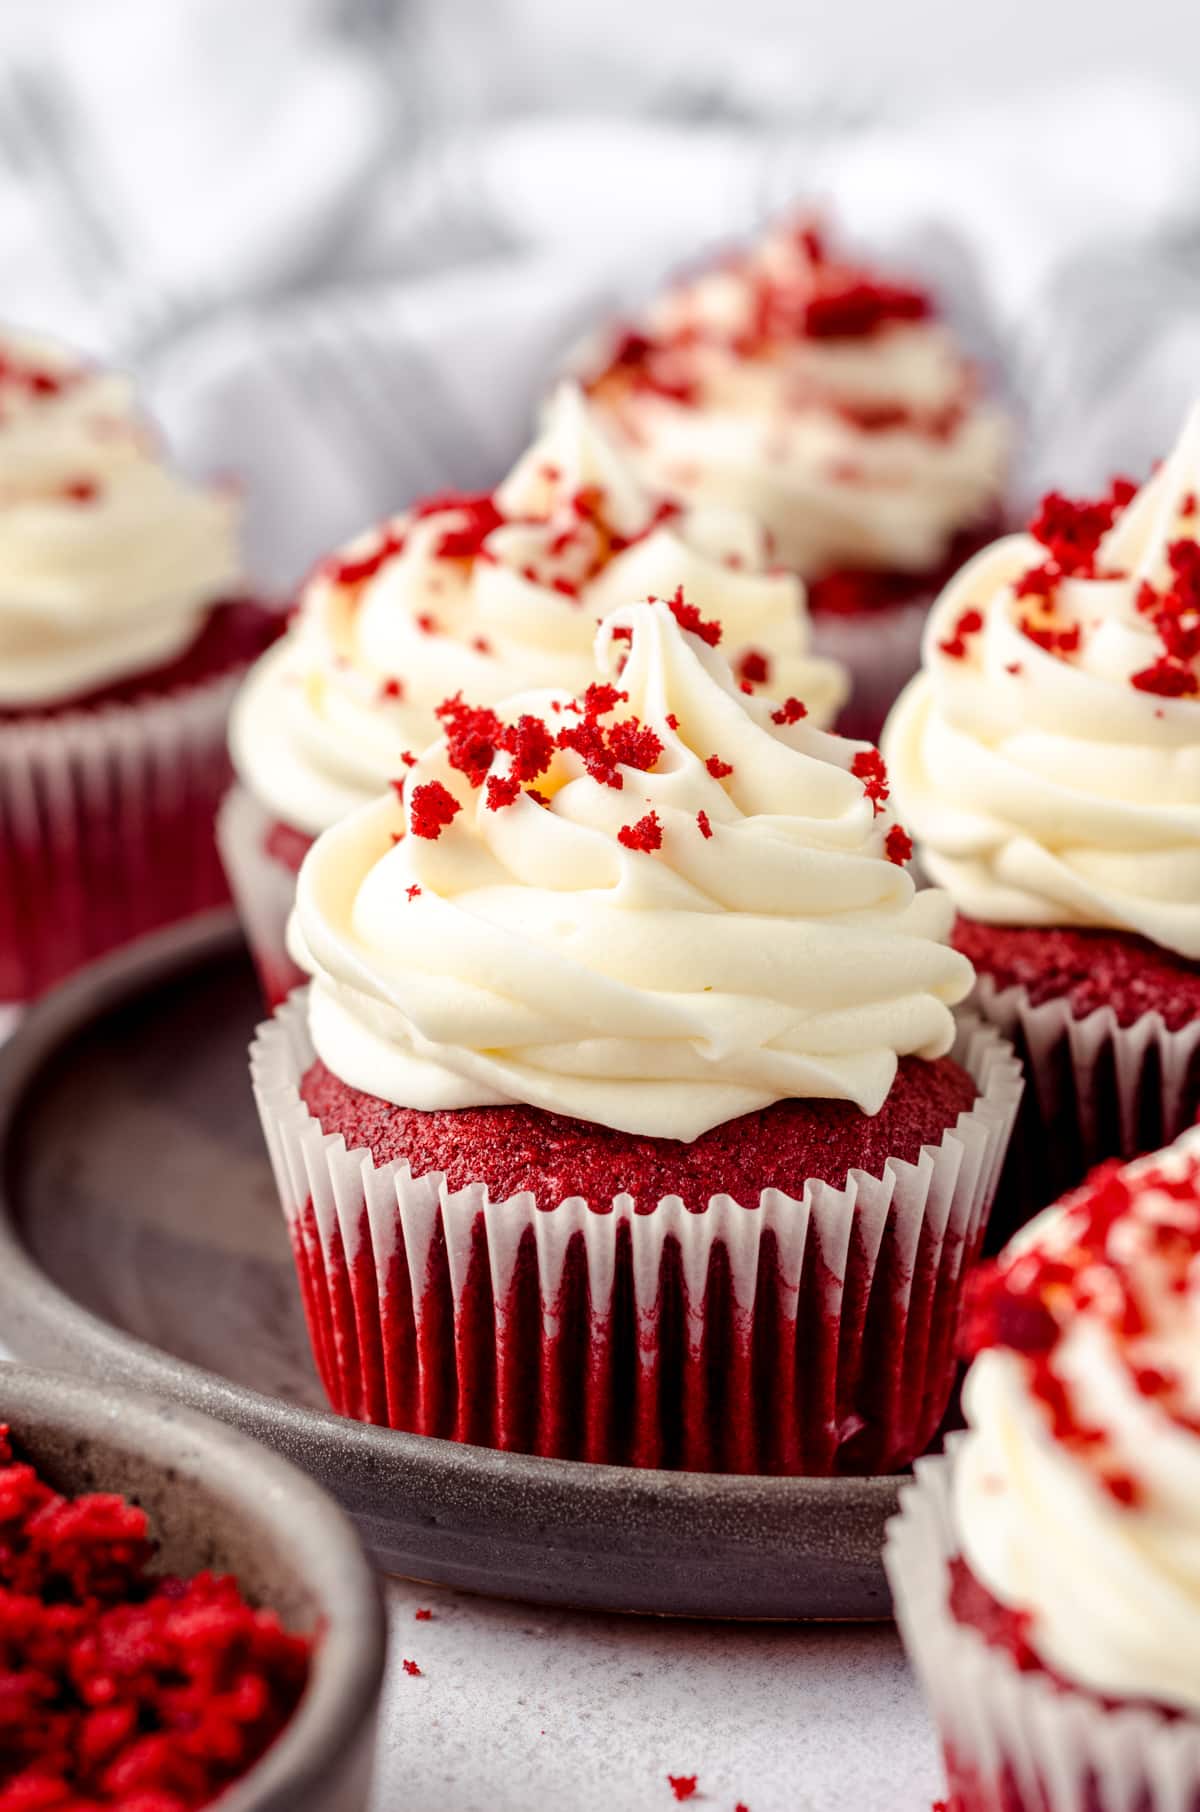 The Best Red Velvet Cupcakes